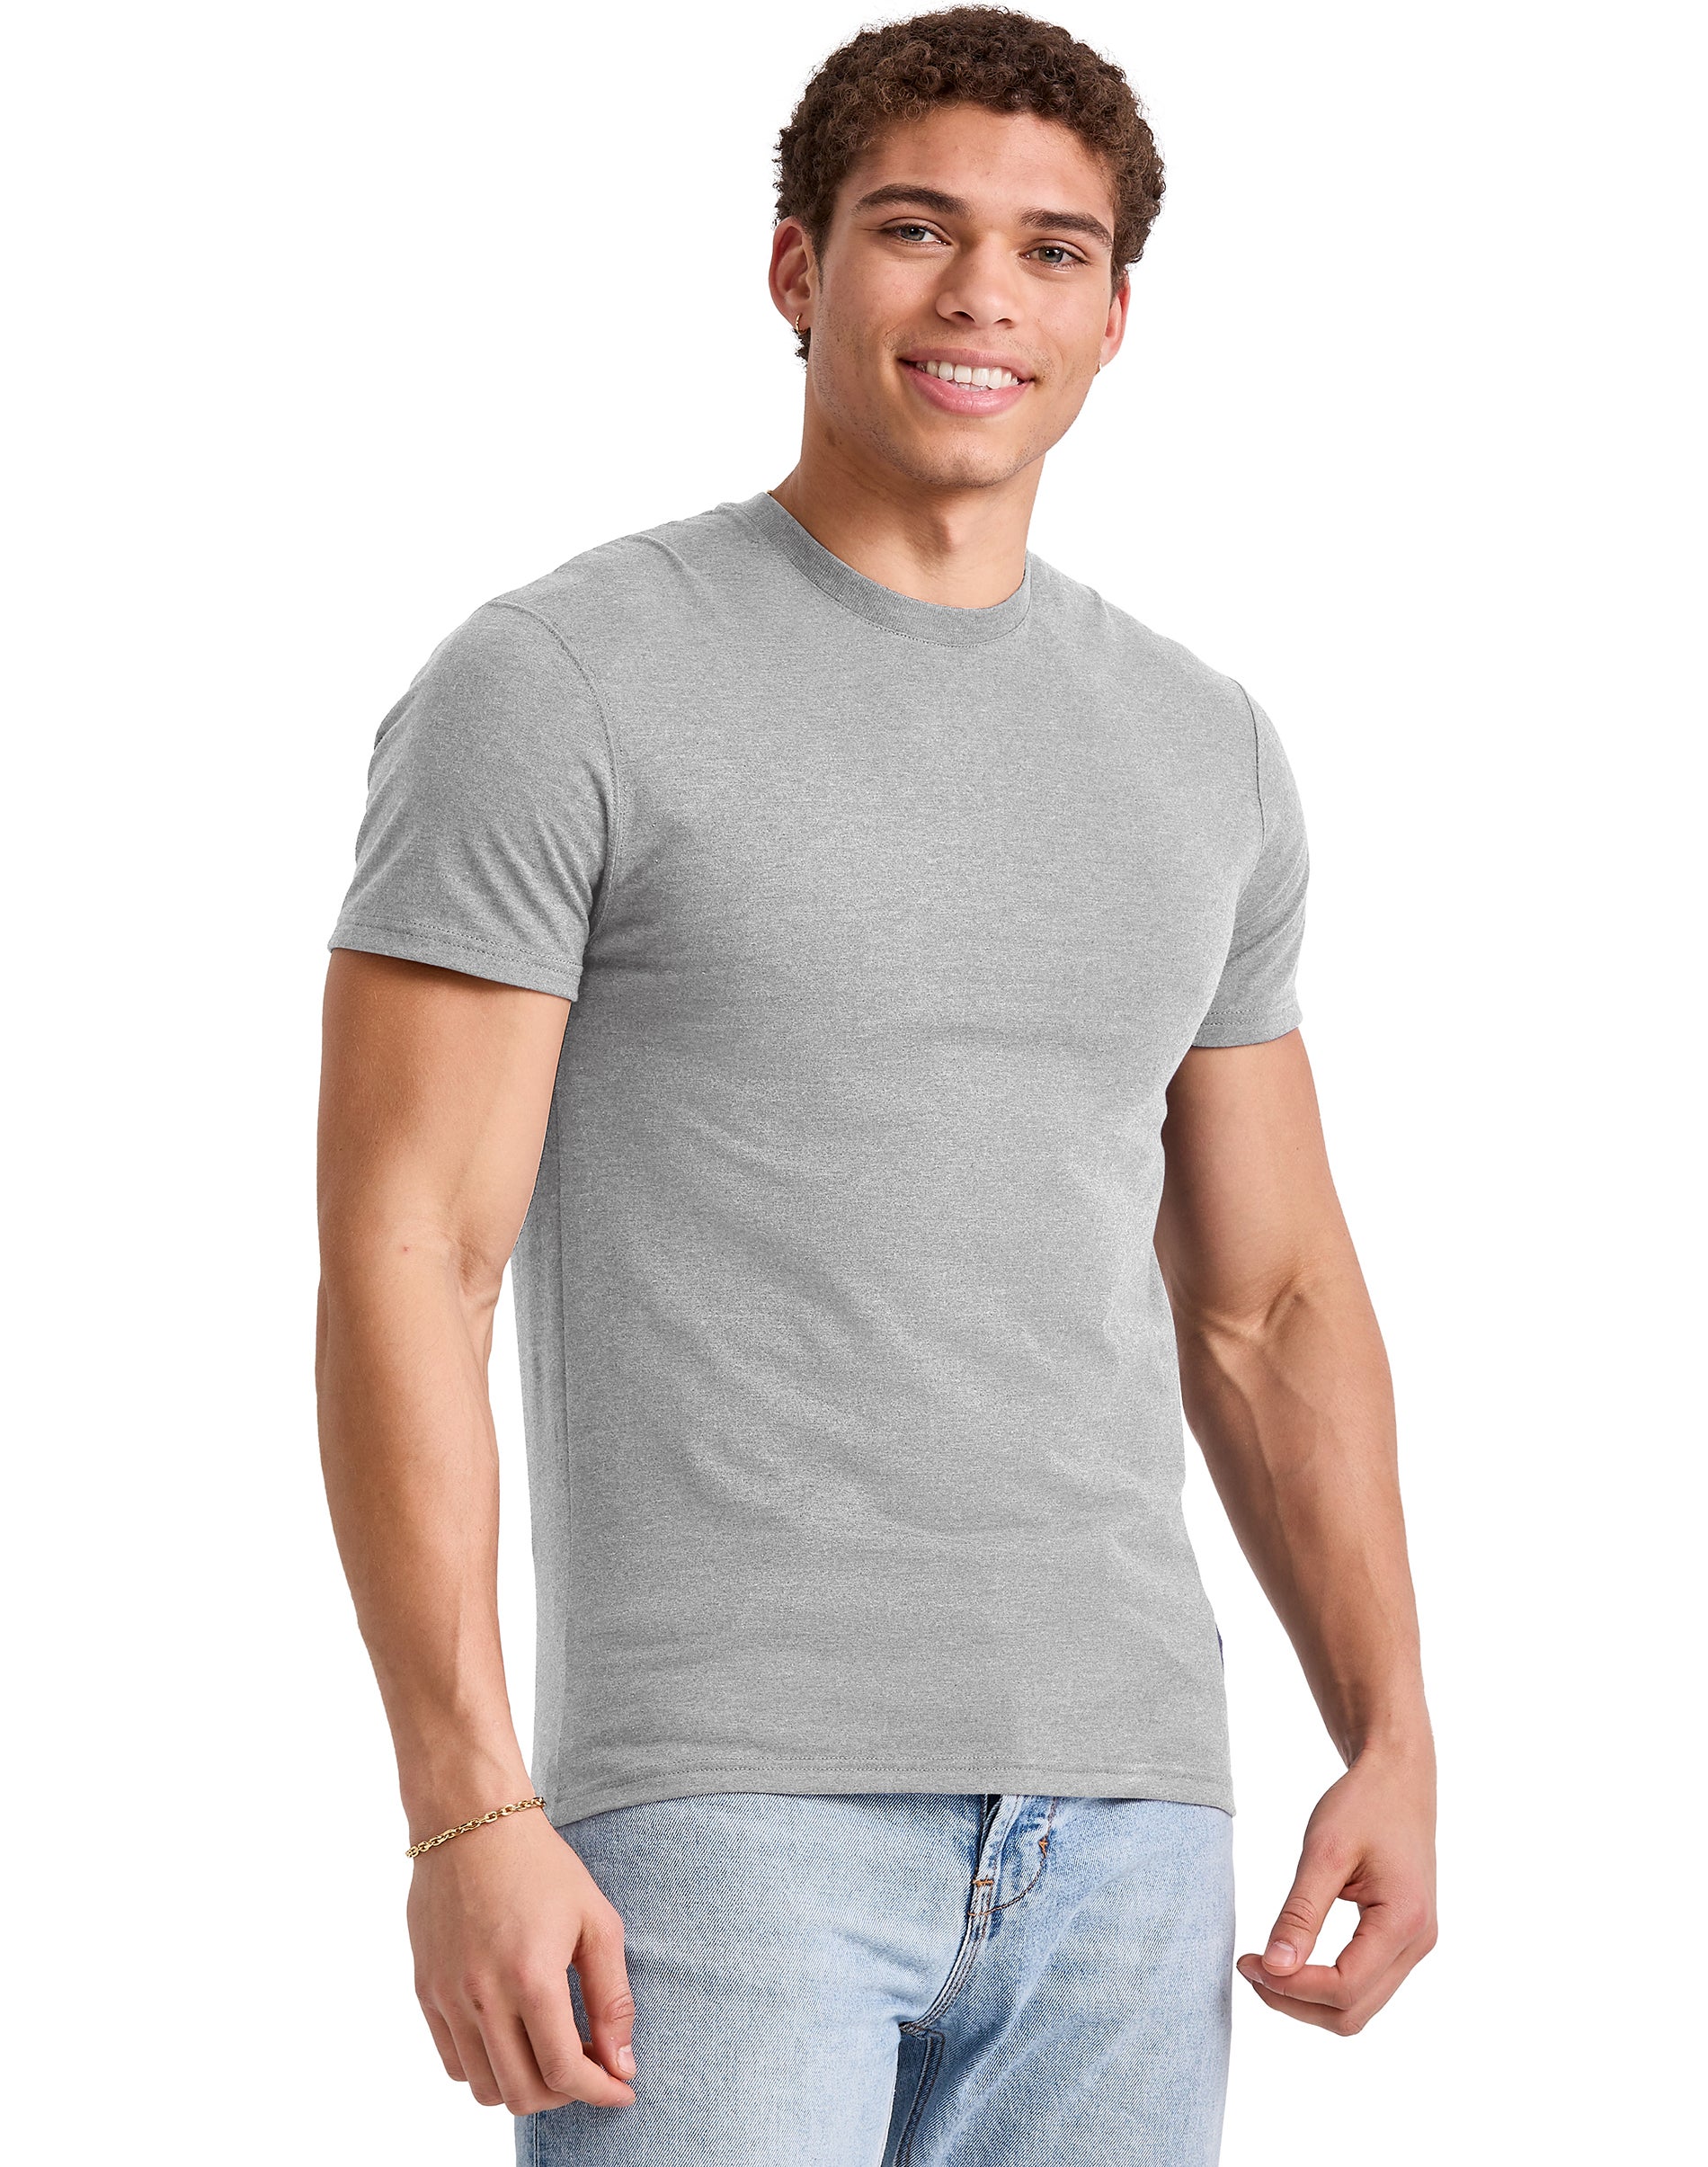 Hanes Originals Mens Cotton T-Shirt